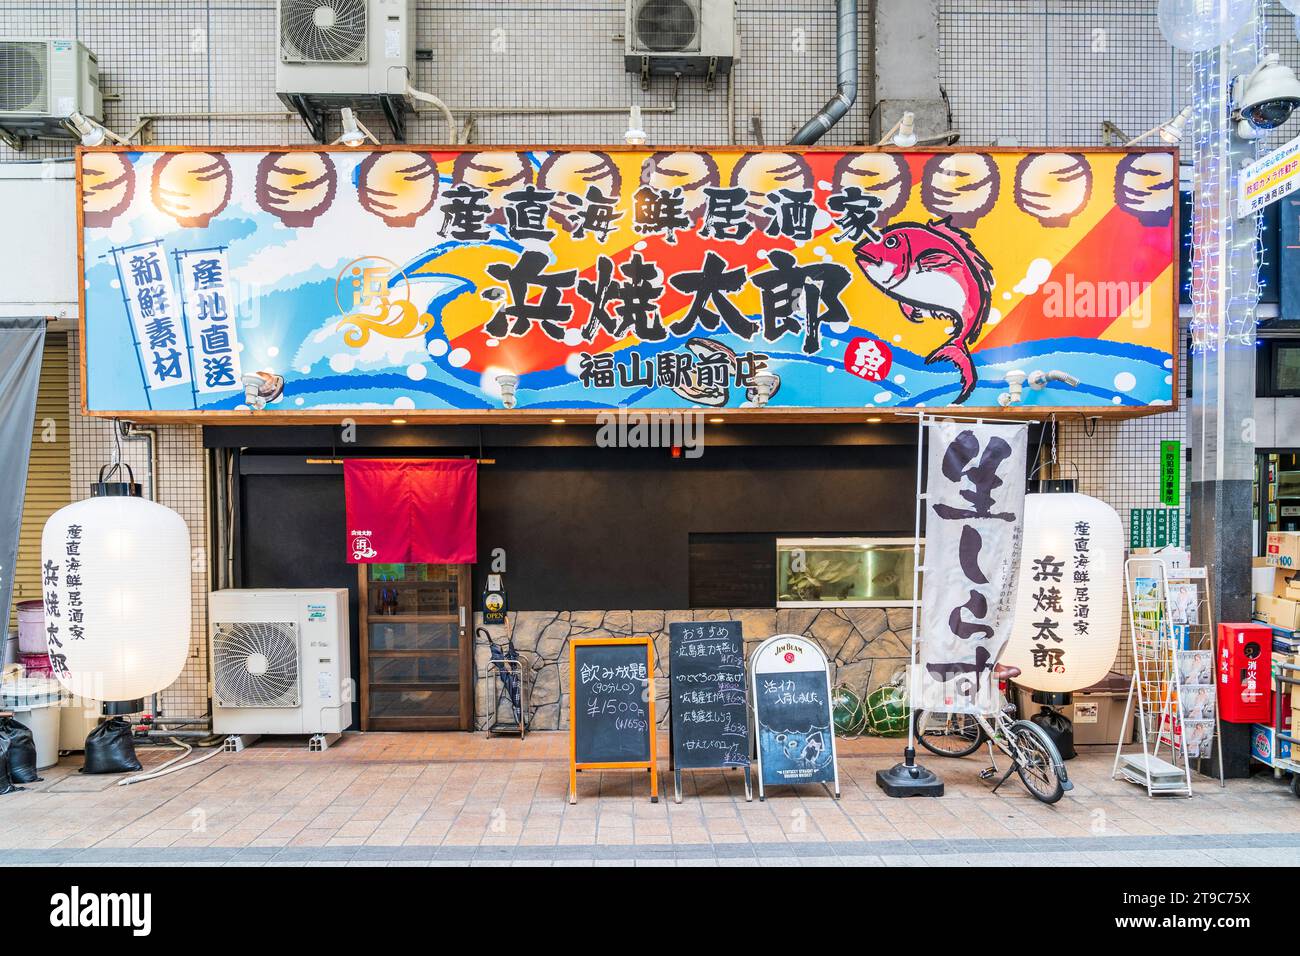 Ristorante izakaya giapponese di stile moderno. Grande cartello con i nomi sopra l'entrata, varie tavole del menu all'esterno con grande chochin bianco e lanterna. Foto Stock